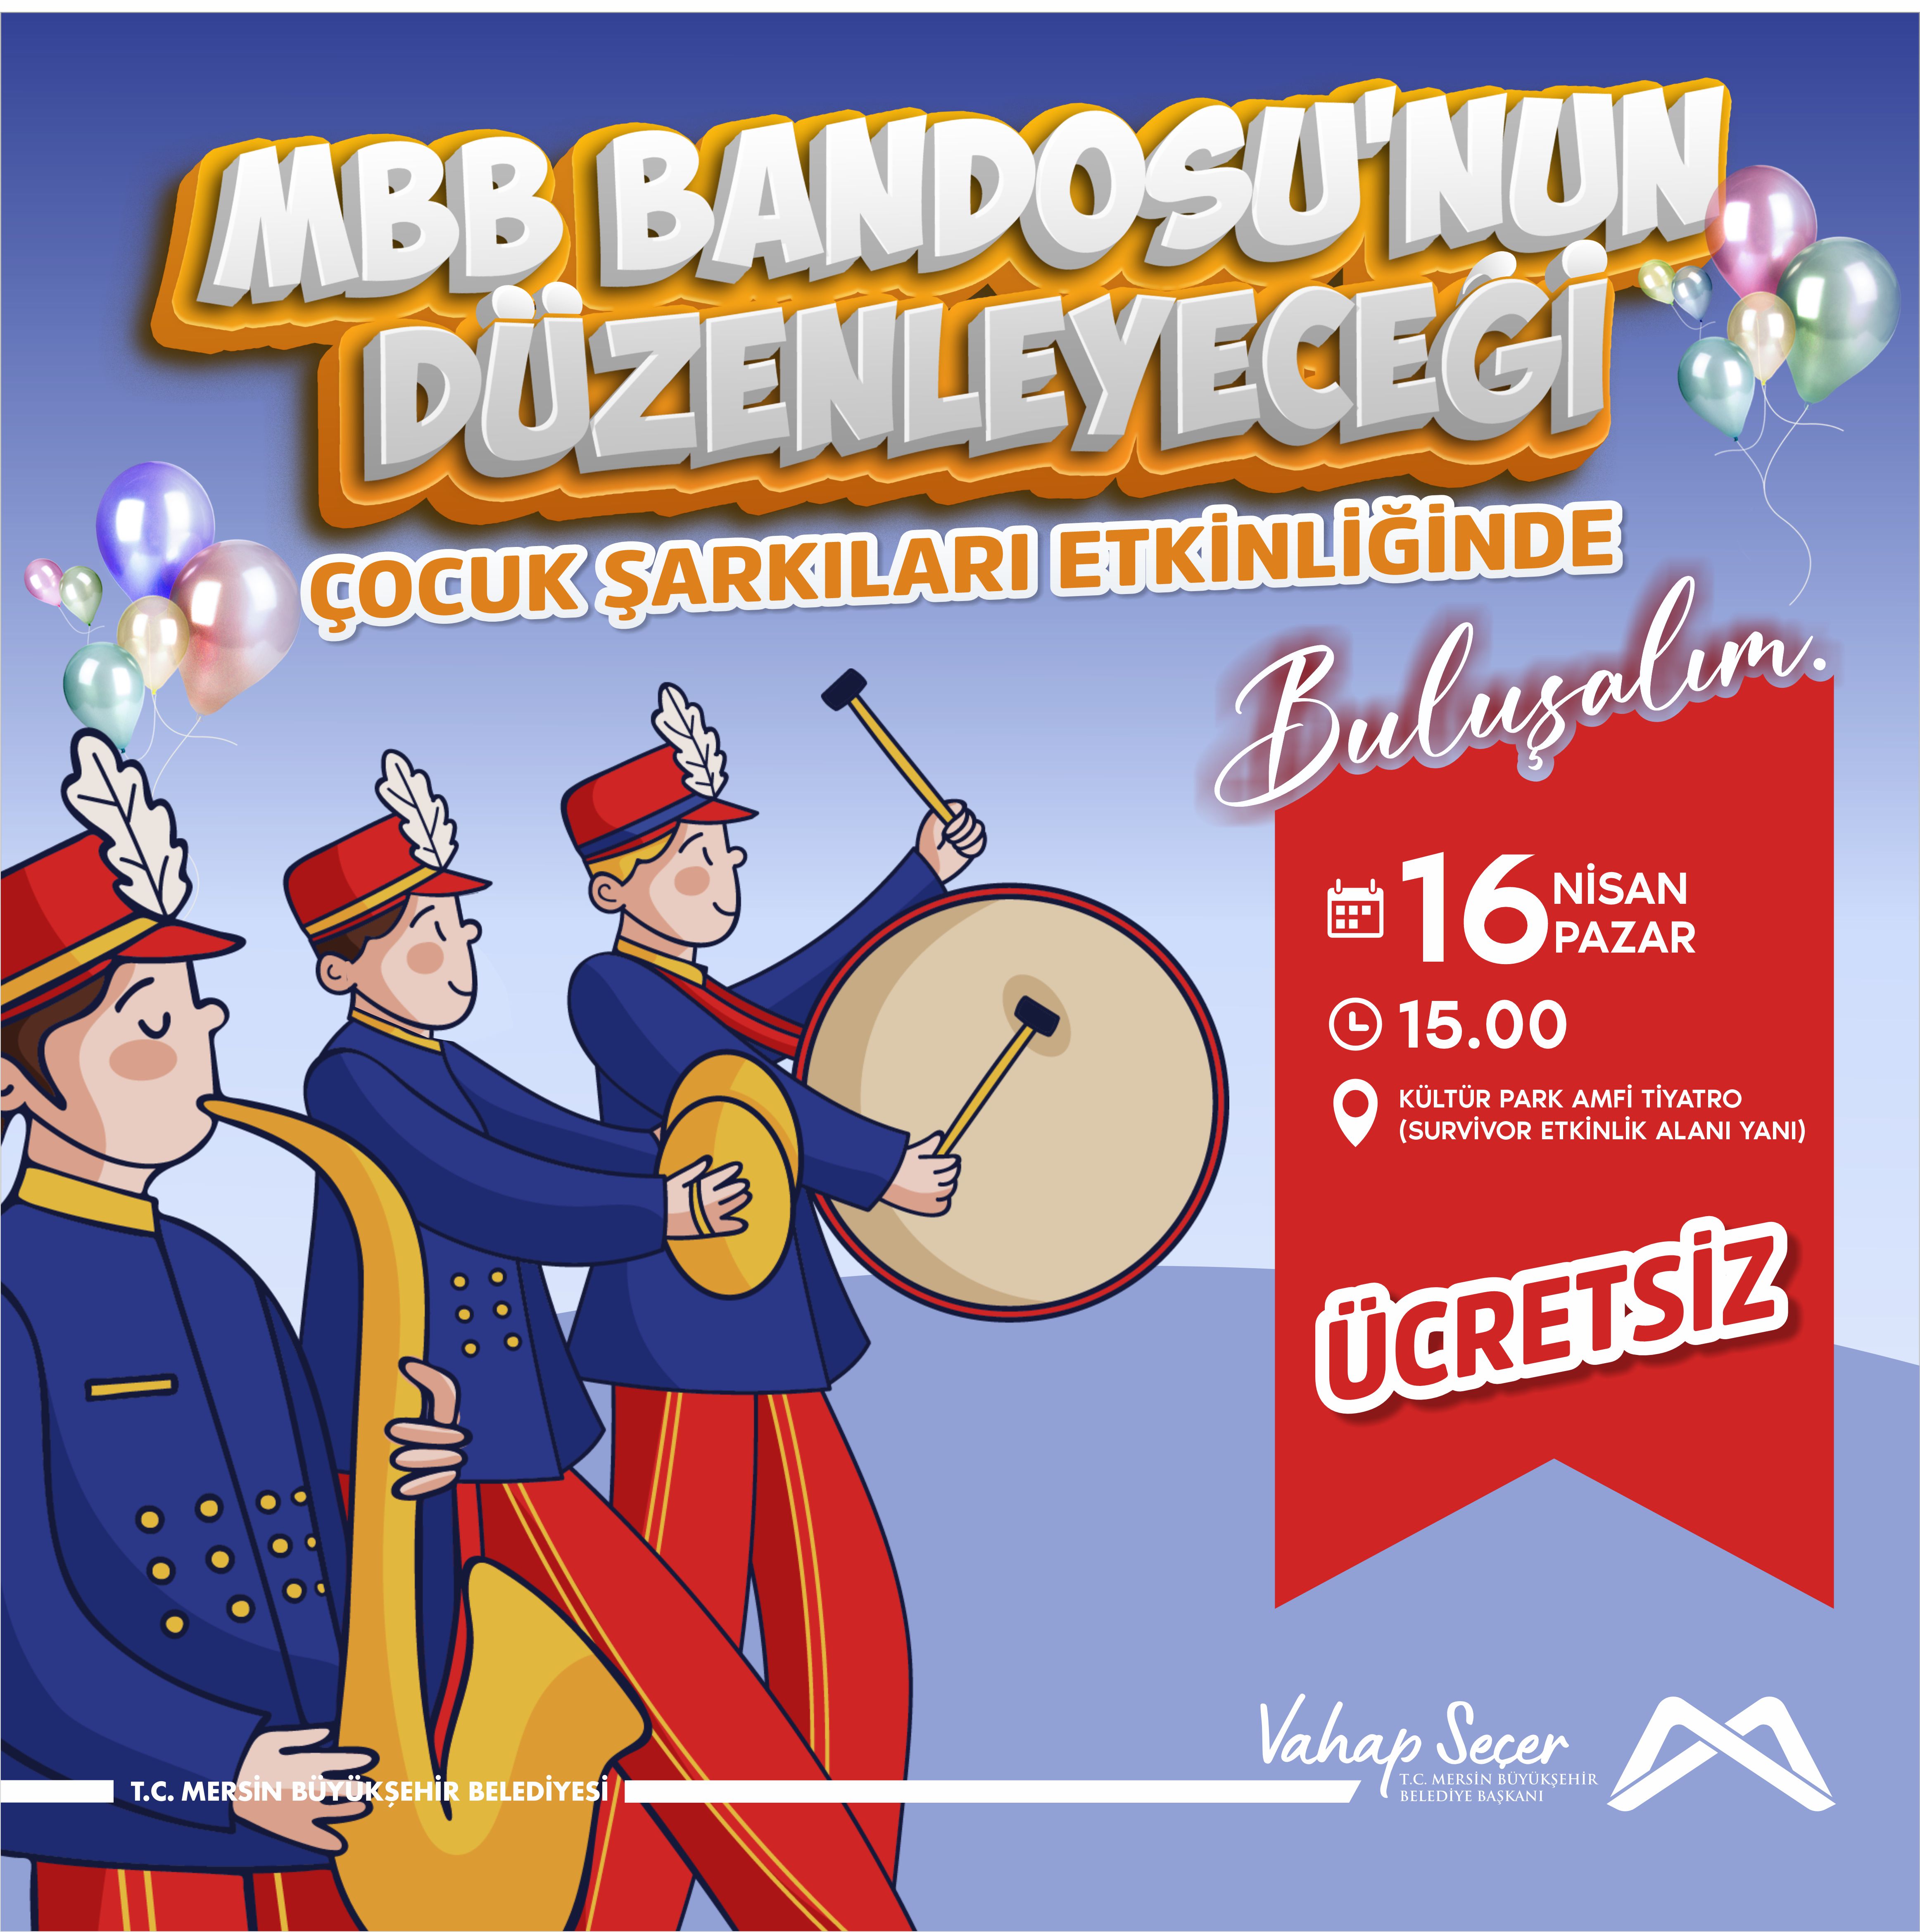 Mersin Büyükşehir Belediyesi Bandosu'nun düzenleyeceği Çocuk Şarkıları Etkinliğinde buluşalım. 